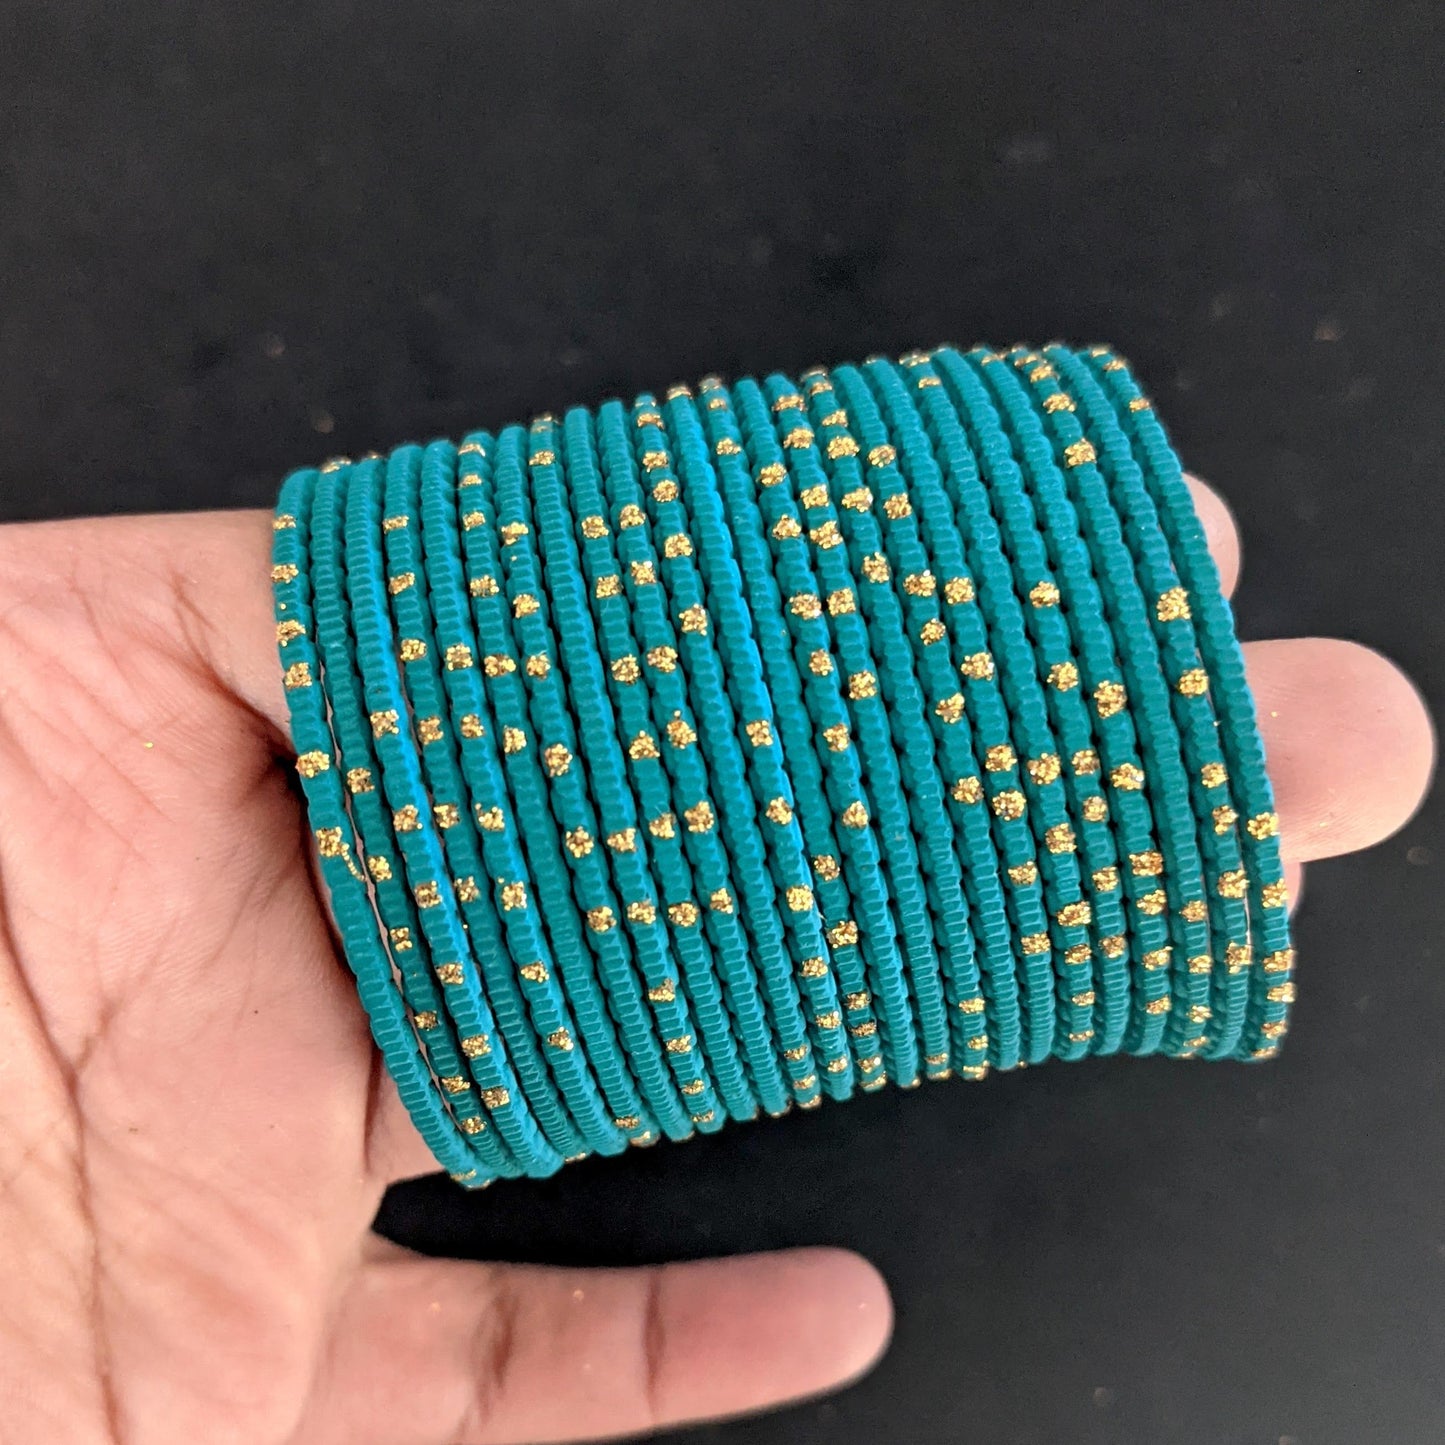 SALE - Toddler Bangles / Colorful Metal Bangles / Set of 12 Bangle Bracelets - Design 1